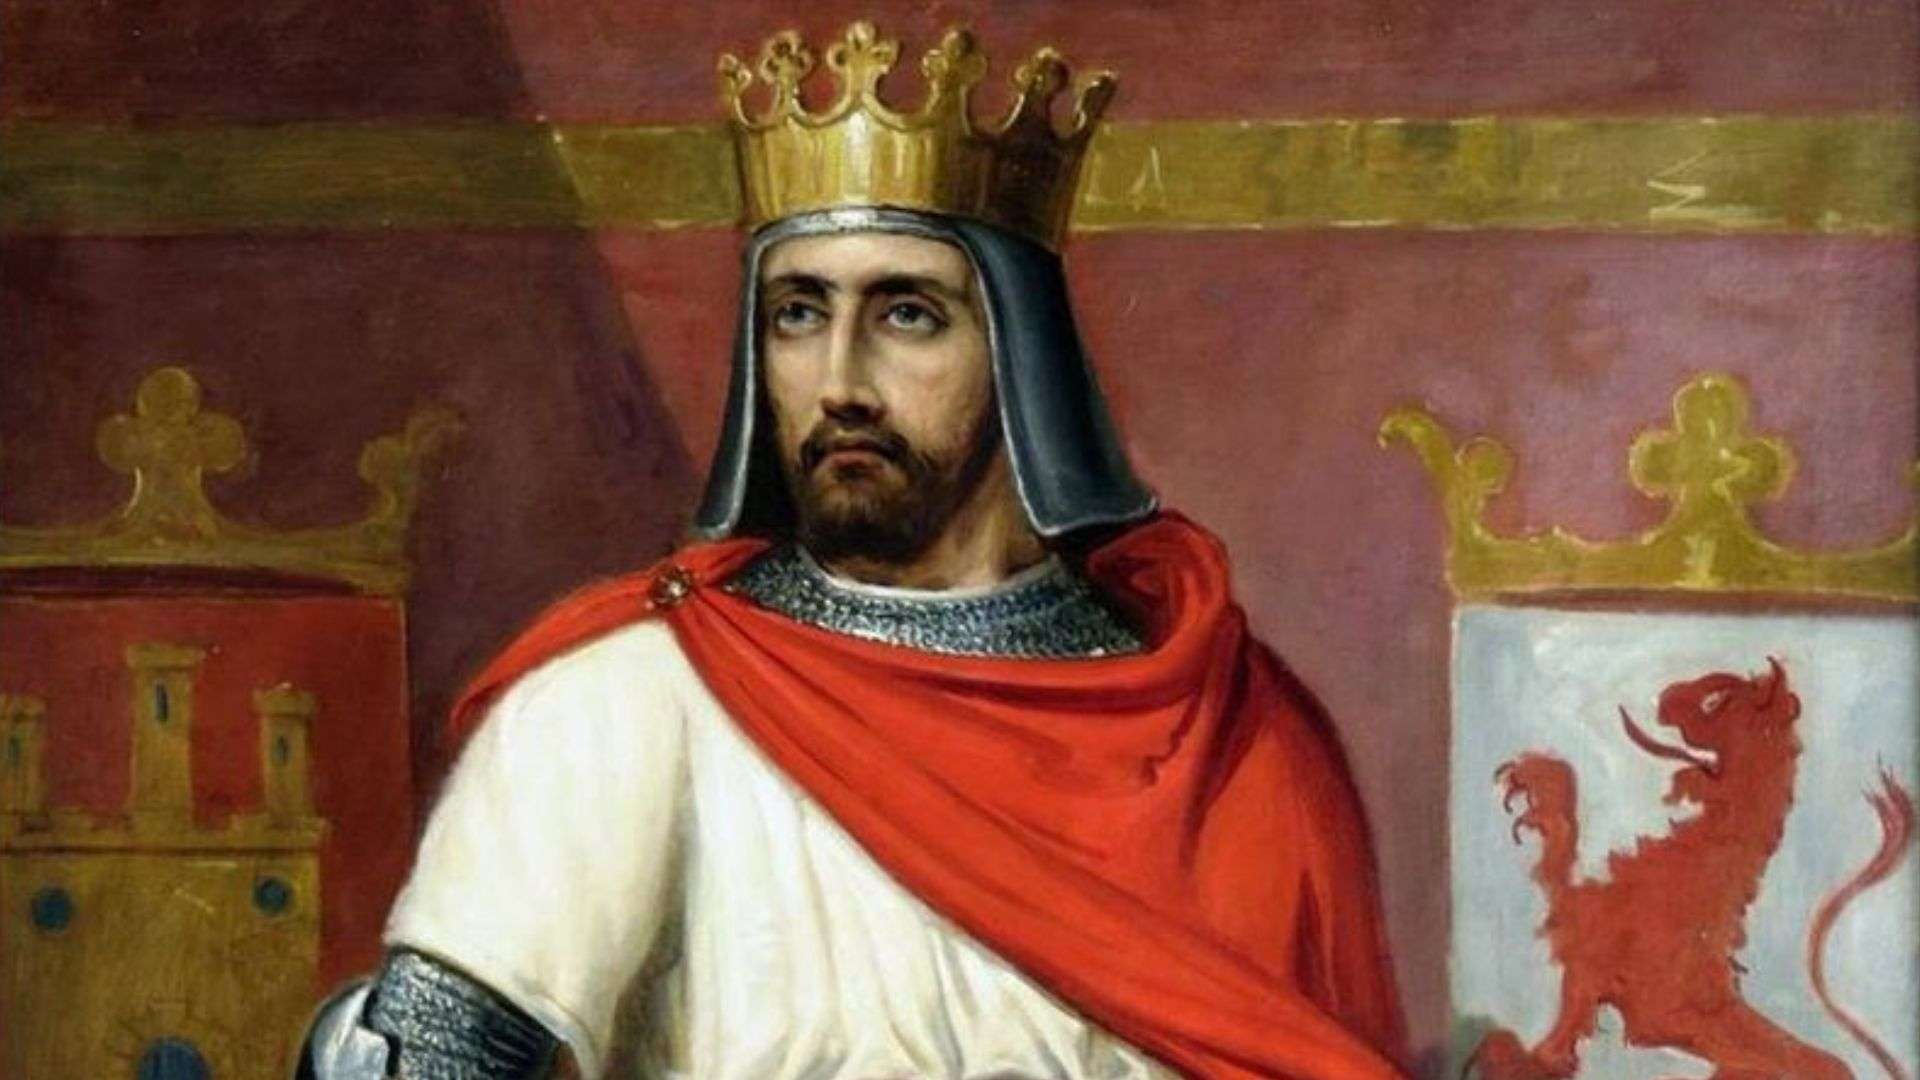 Enrique II de Castilla, el primer Rey de la Casa de Trastámara